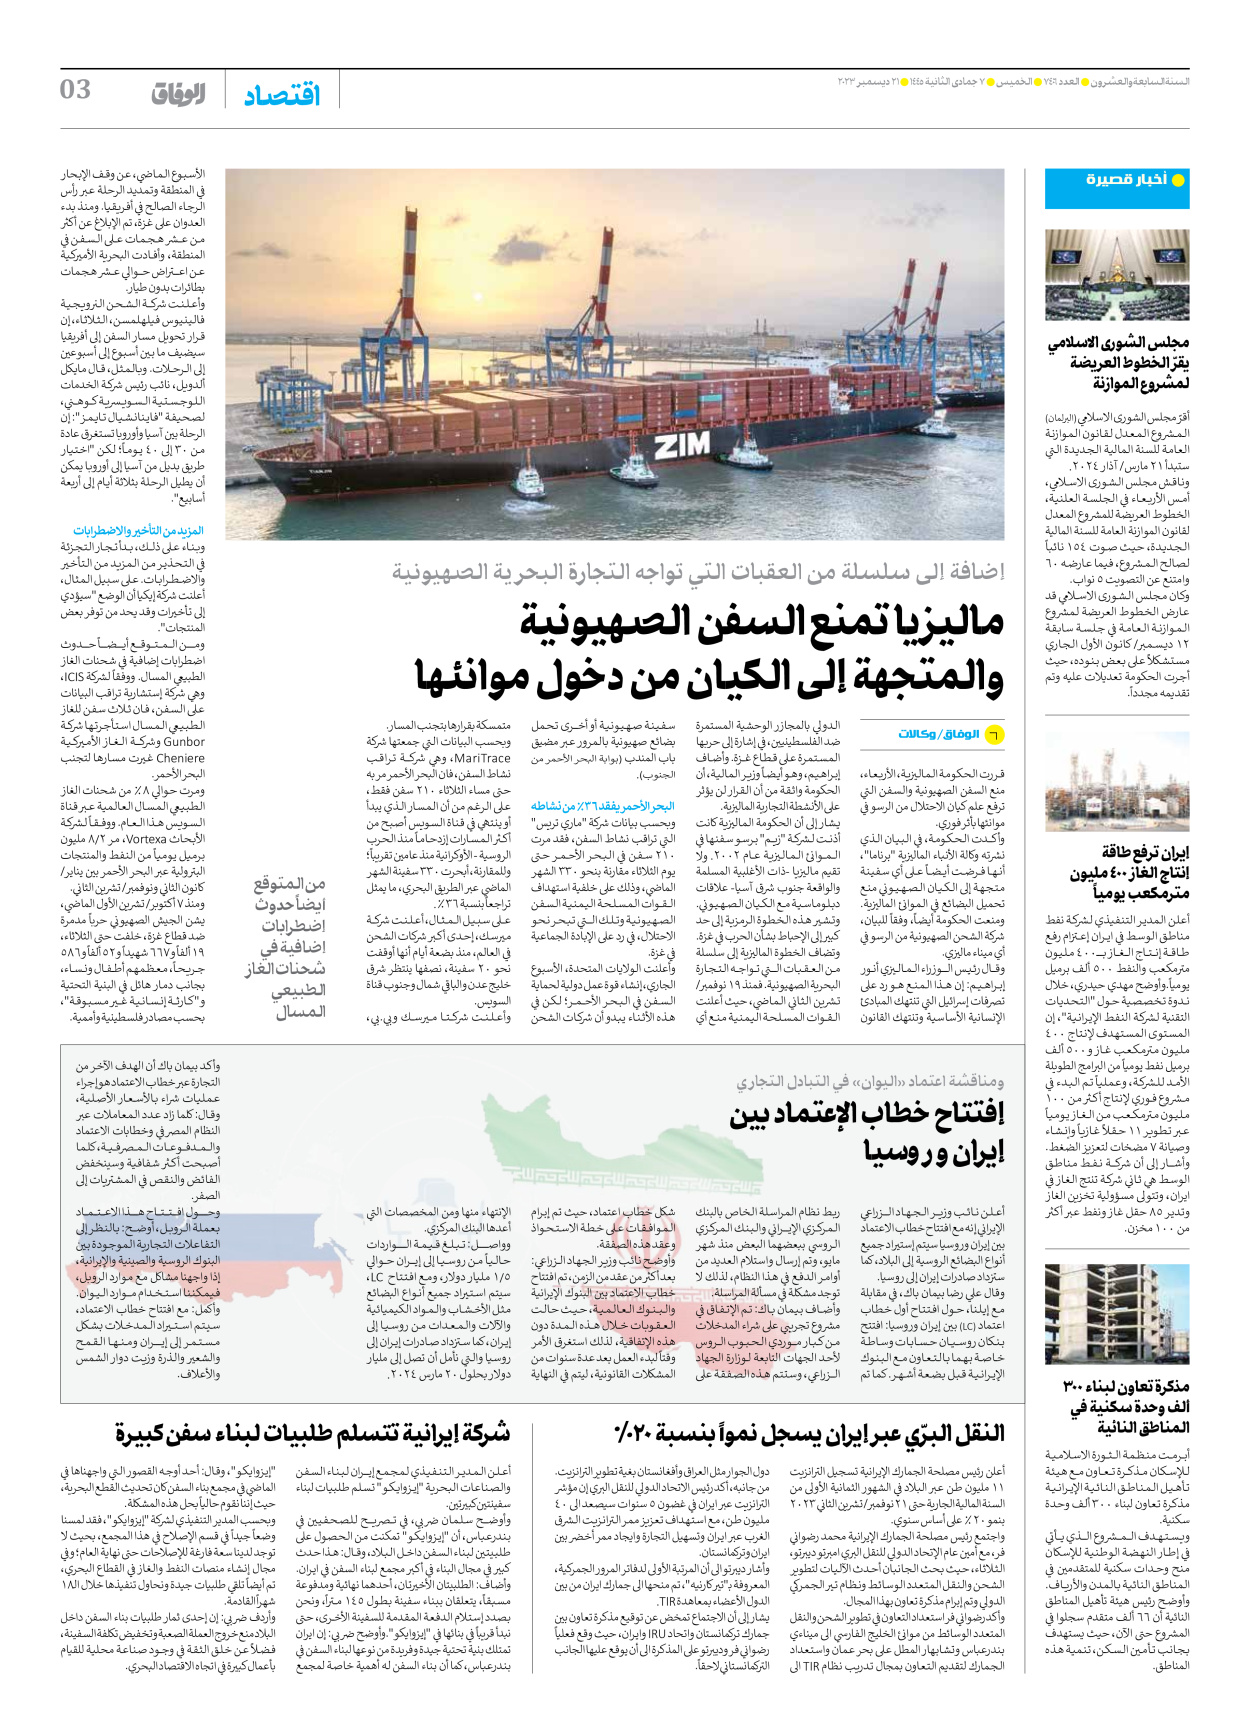 صحیفة ایران الدولیة الوفاق - العدد سبعة آلاف وأربعمائة وستة - ٢١ ديسمبر ٢٠٢٣ - الصفحة ۳